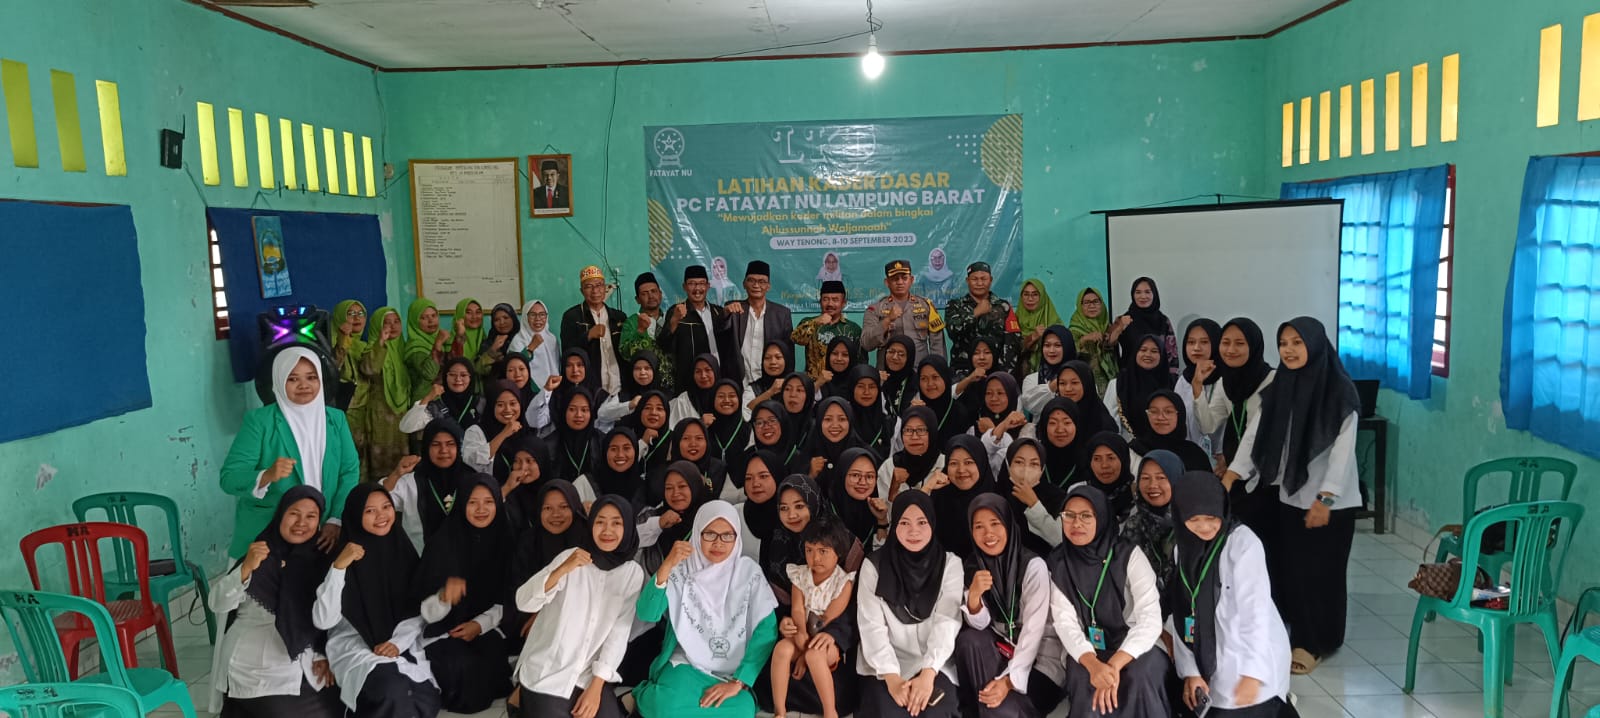 Perkuat Kaderisasi, PC Fatayat NU Lampung Barat Gelar LKD 